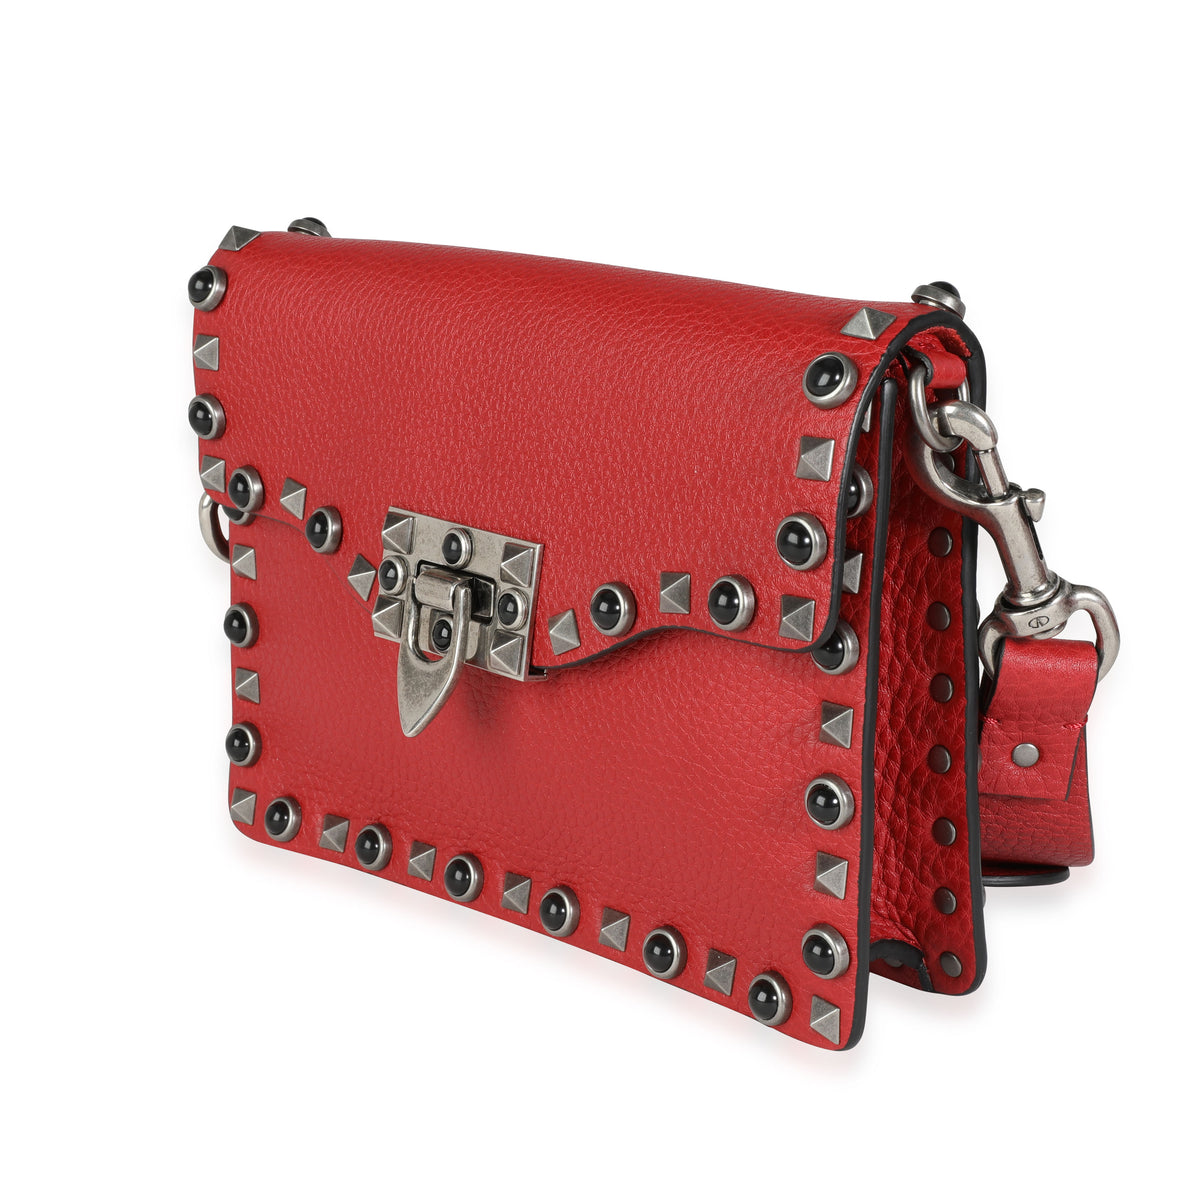 Belt bags Valentino Garavani  Rockstud Spike red nappa belt bag   PW0B0B46NAP0RO